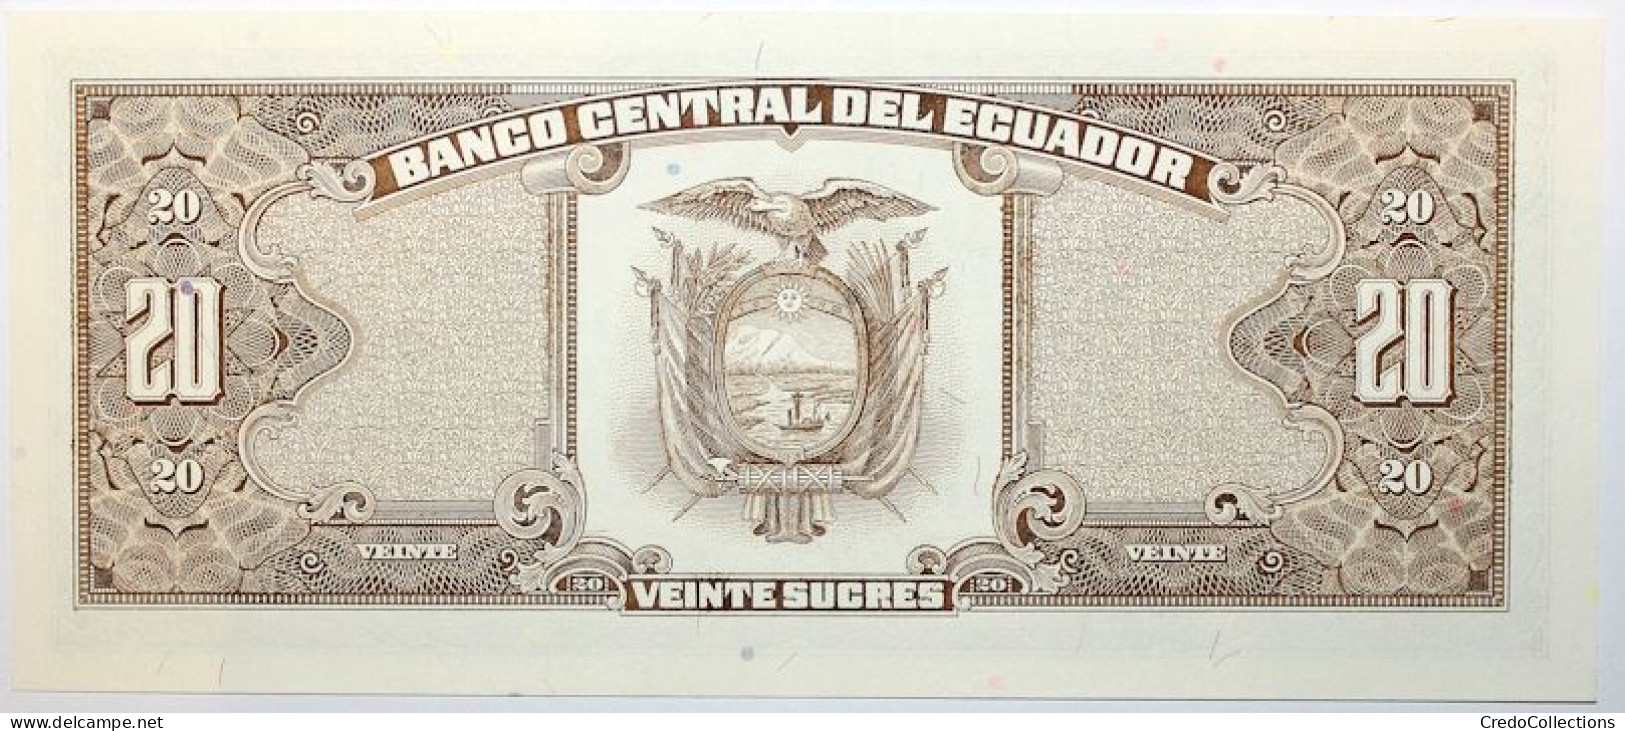 Équateur - 20 Sucres - 1988 - PICK 121Аa.7 - NEUF - Equateur